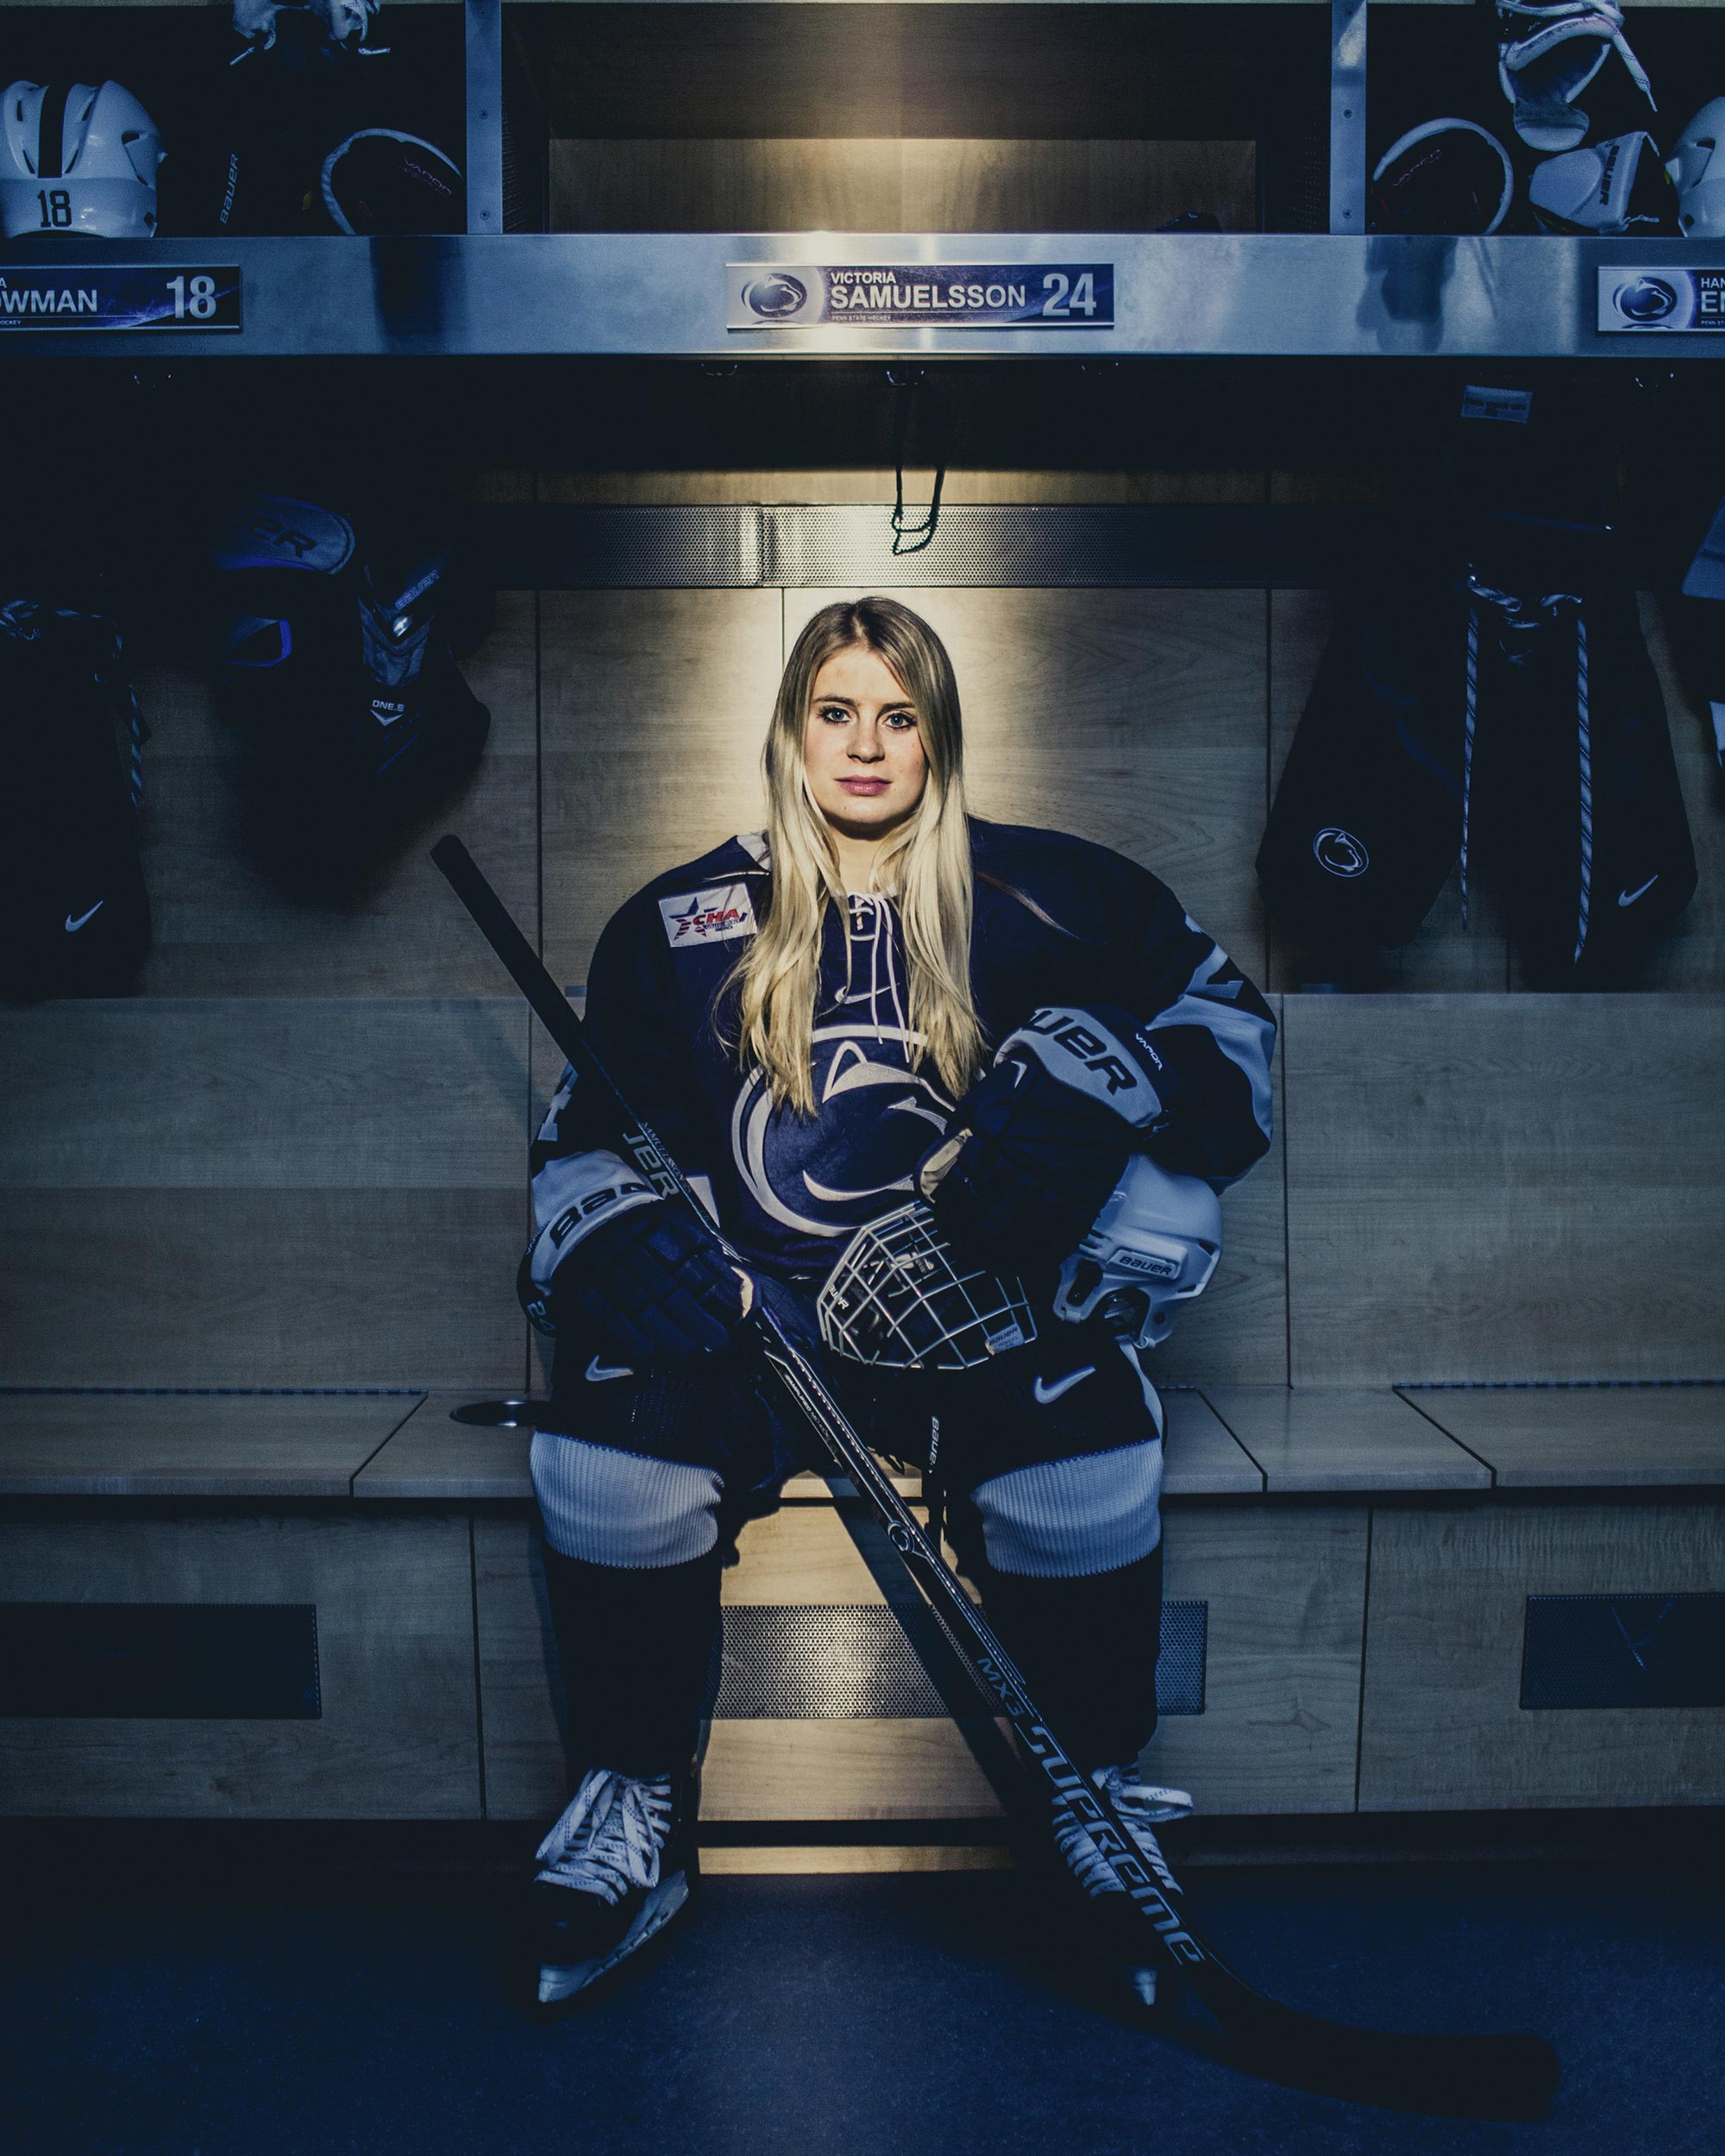 Victoria Samuelsson PSU Hockey